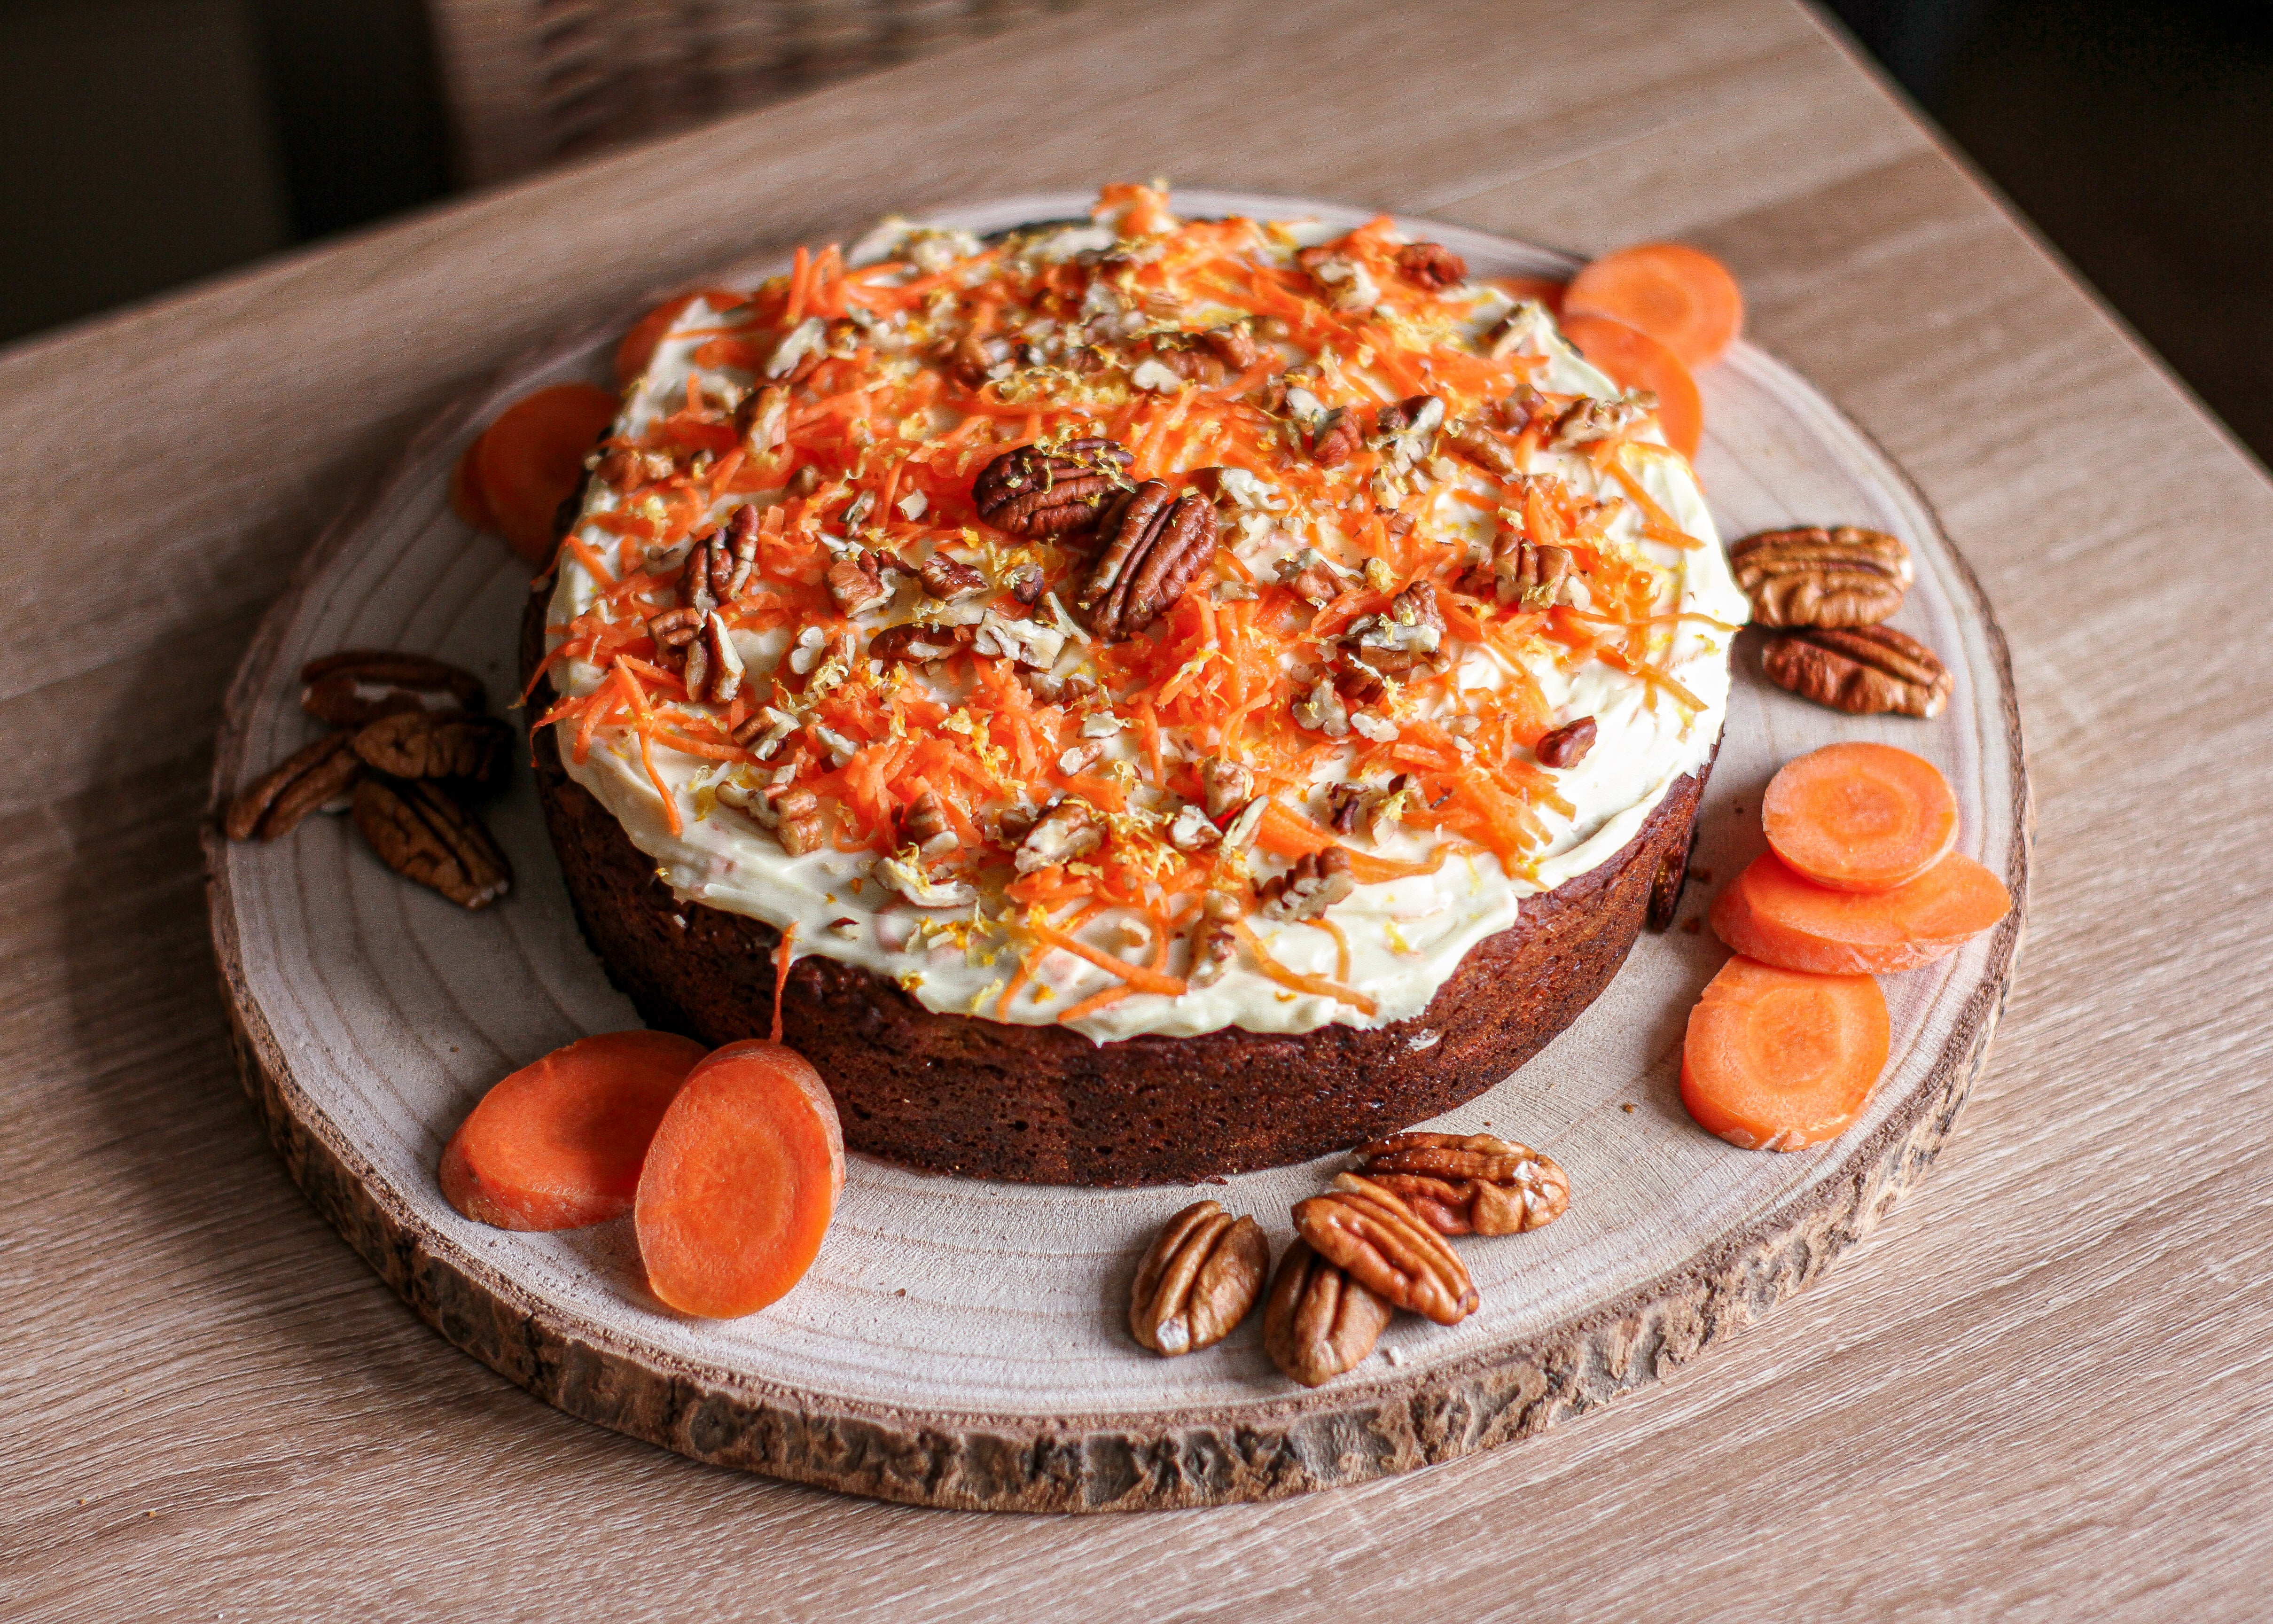 The Carrot Cake - Coco's Cuisine Traiteur-5.jpg__PID:88665956-f55a-4c58-ba80-0da17c4f3ecc